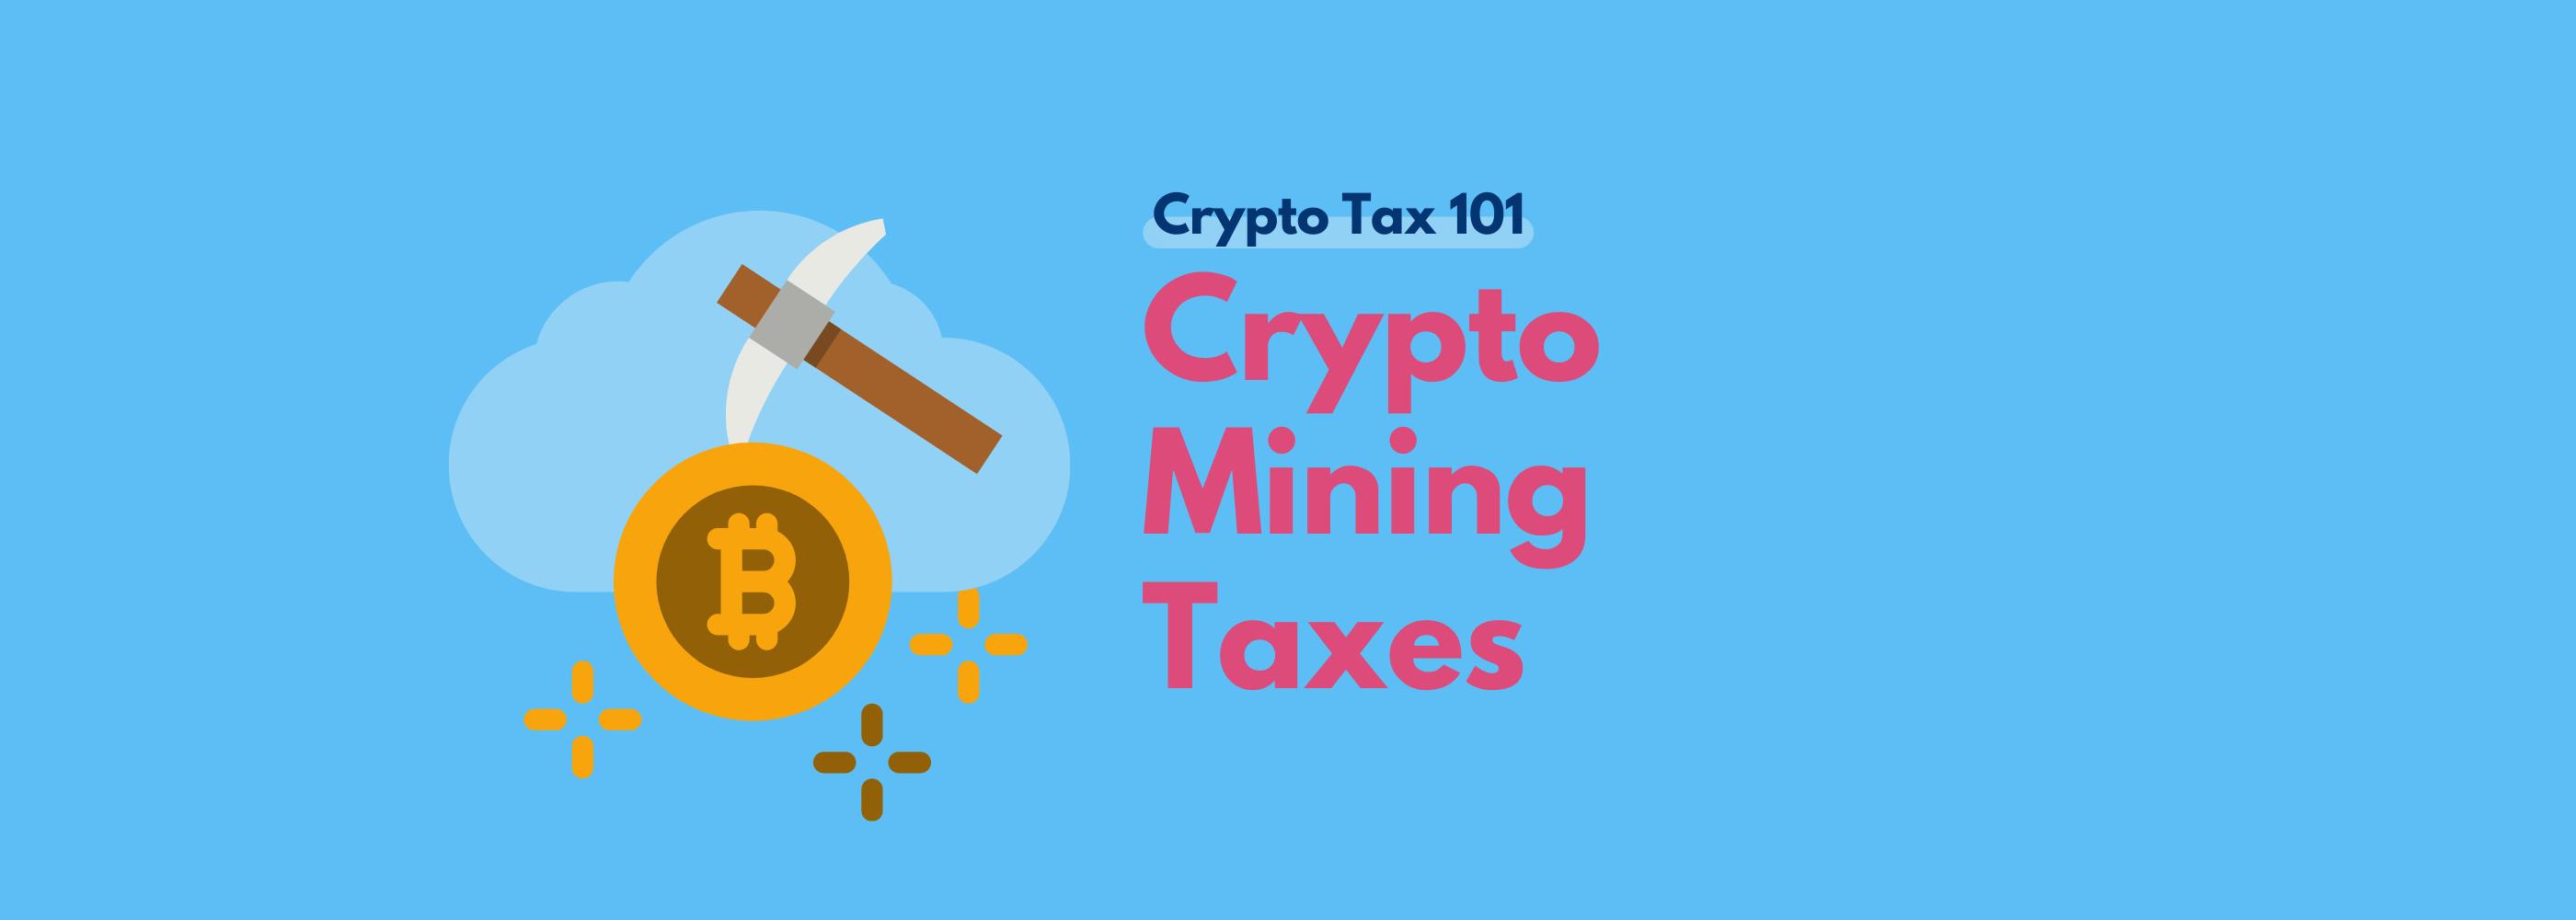 crypto mining tax